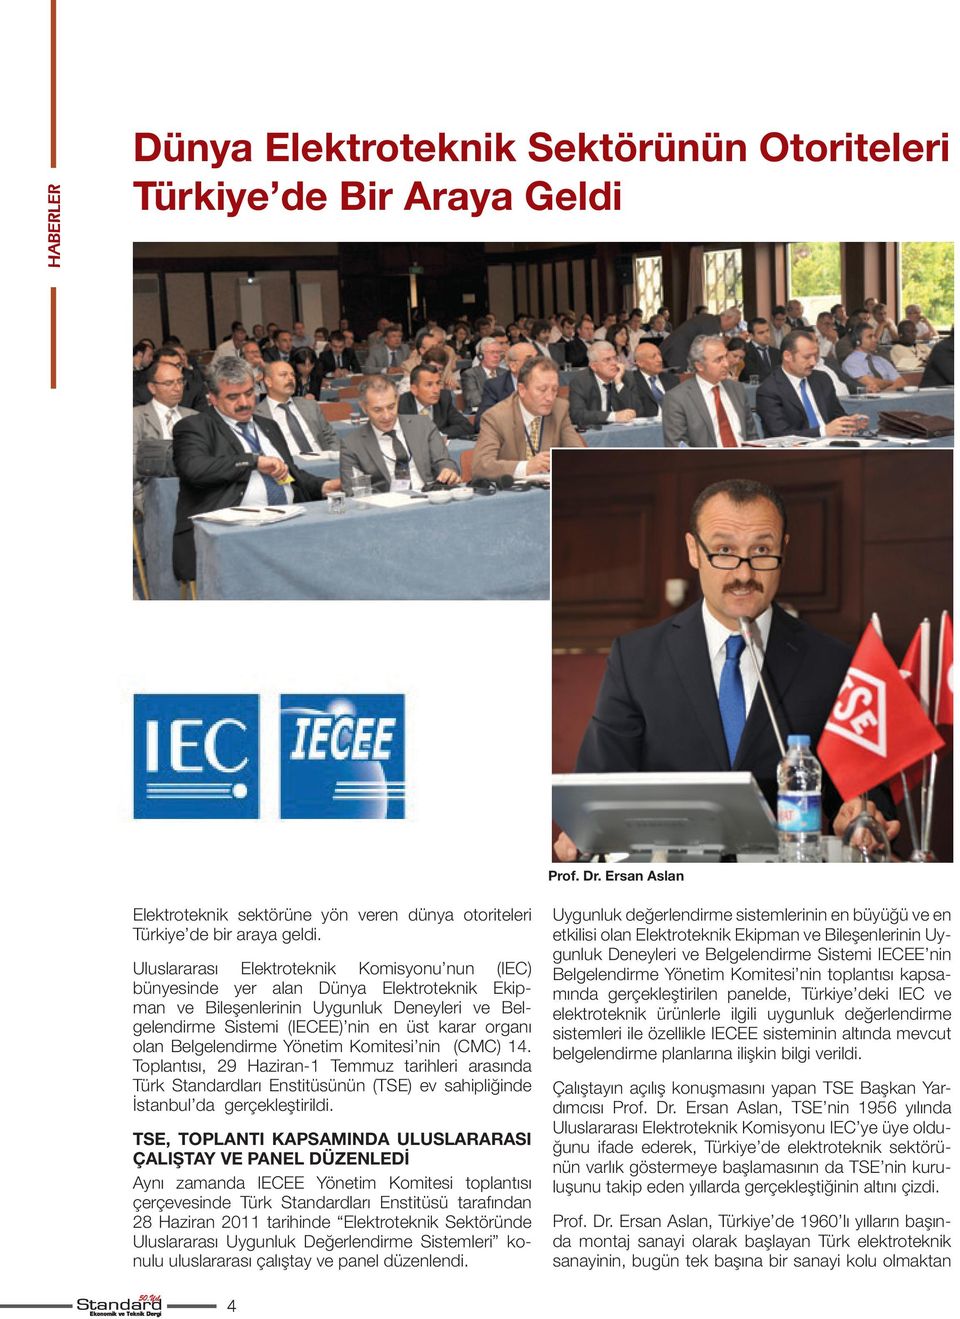 Belgelendirme Yönetim Komitesi nin (CMC) 14. Toplantısı, 29 Haziran-1 Temmuz tarihleri arasında Türk Standardları Enstitüsünün (TSE) ev sahipliğinde İstanbul da gerçekleştirildi.